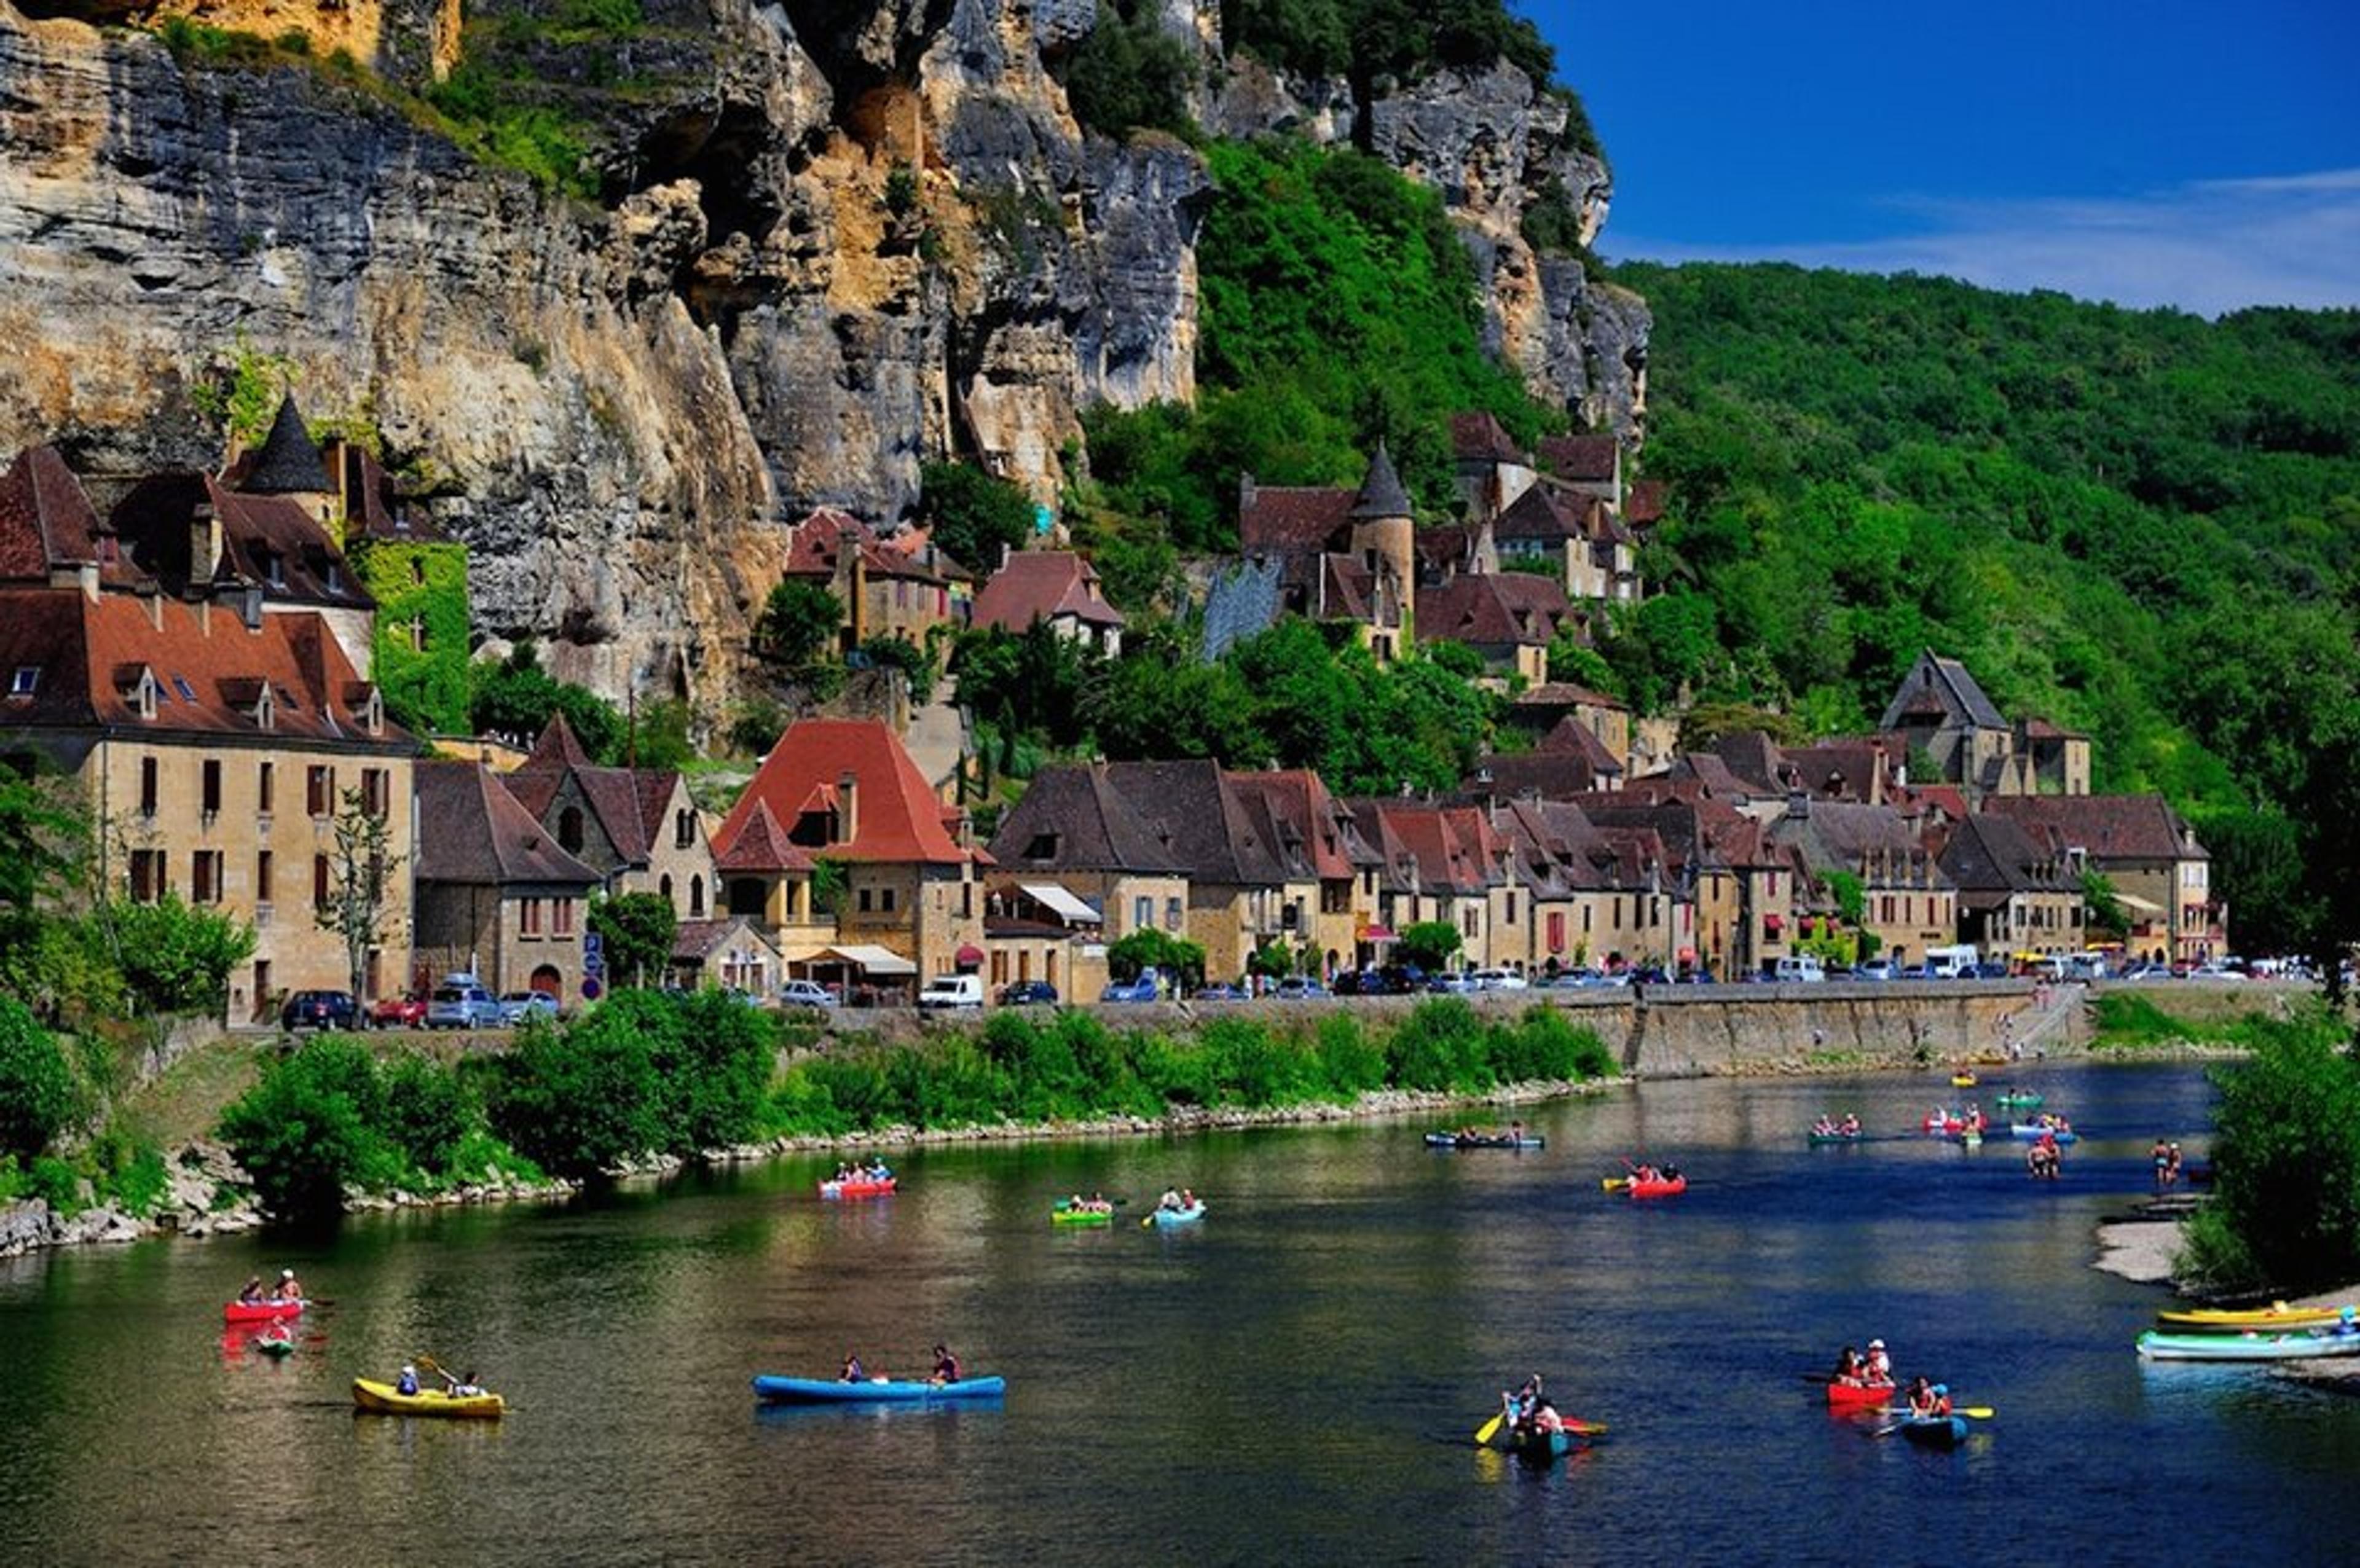 Dordogne Périgord